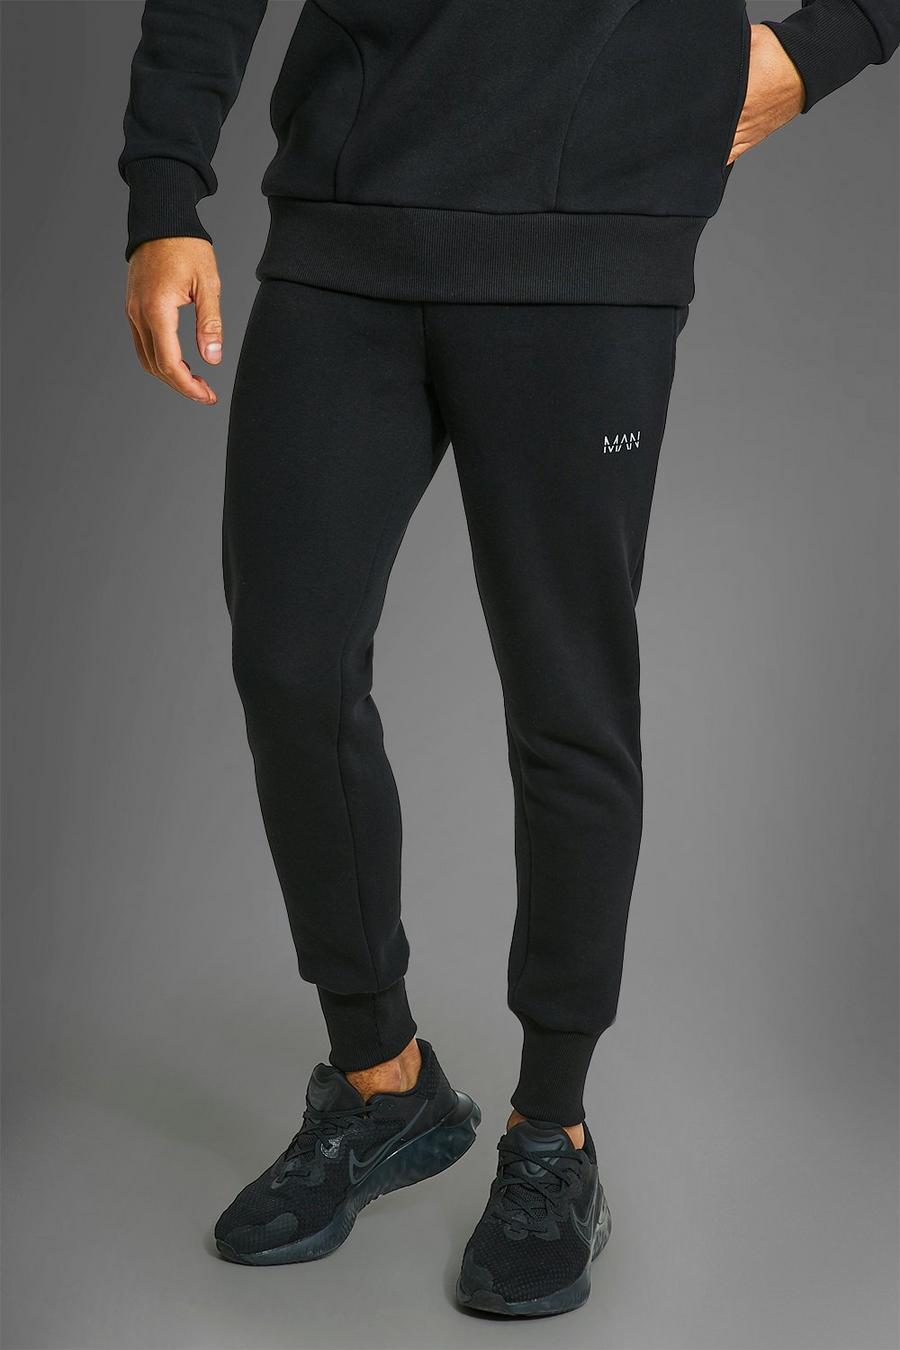 Pantalón deportivo MAN Active deportivo de canalé con cremallera en los bolsillos, Black nero image number 1